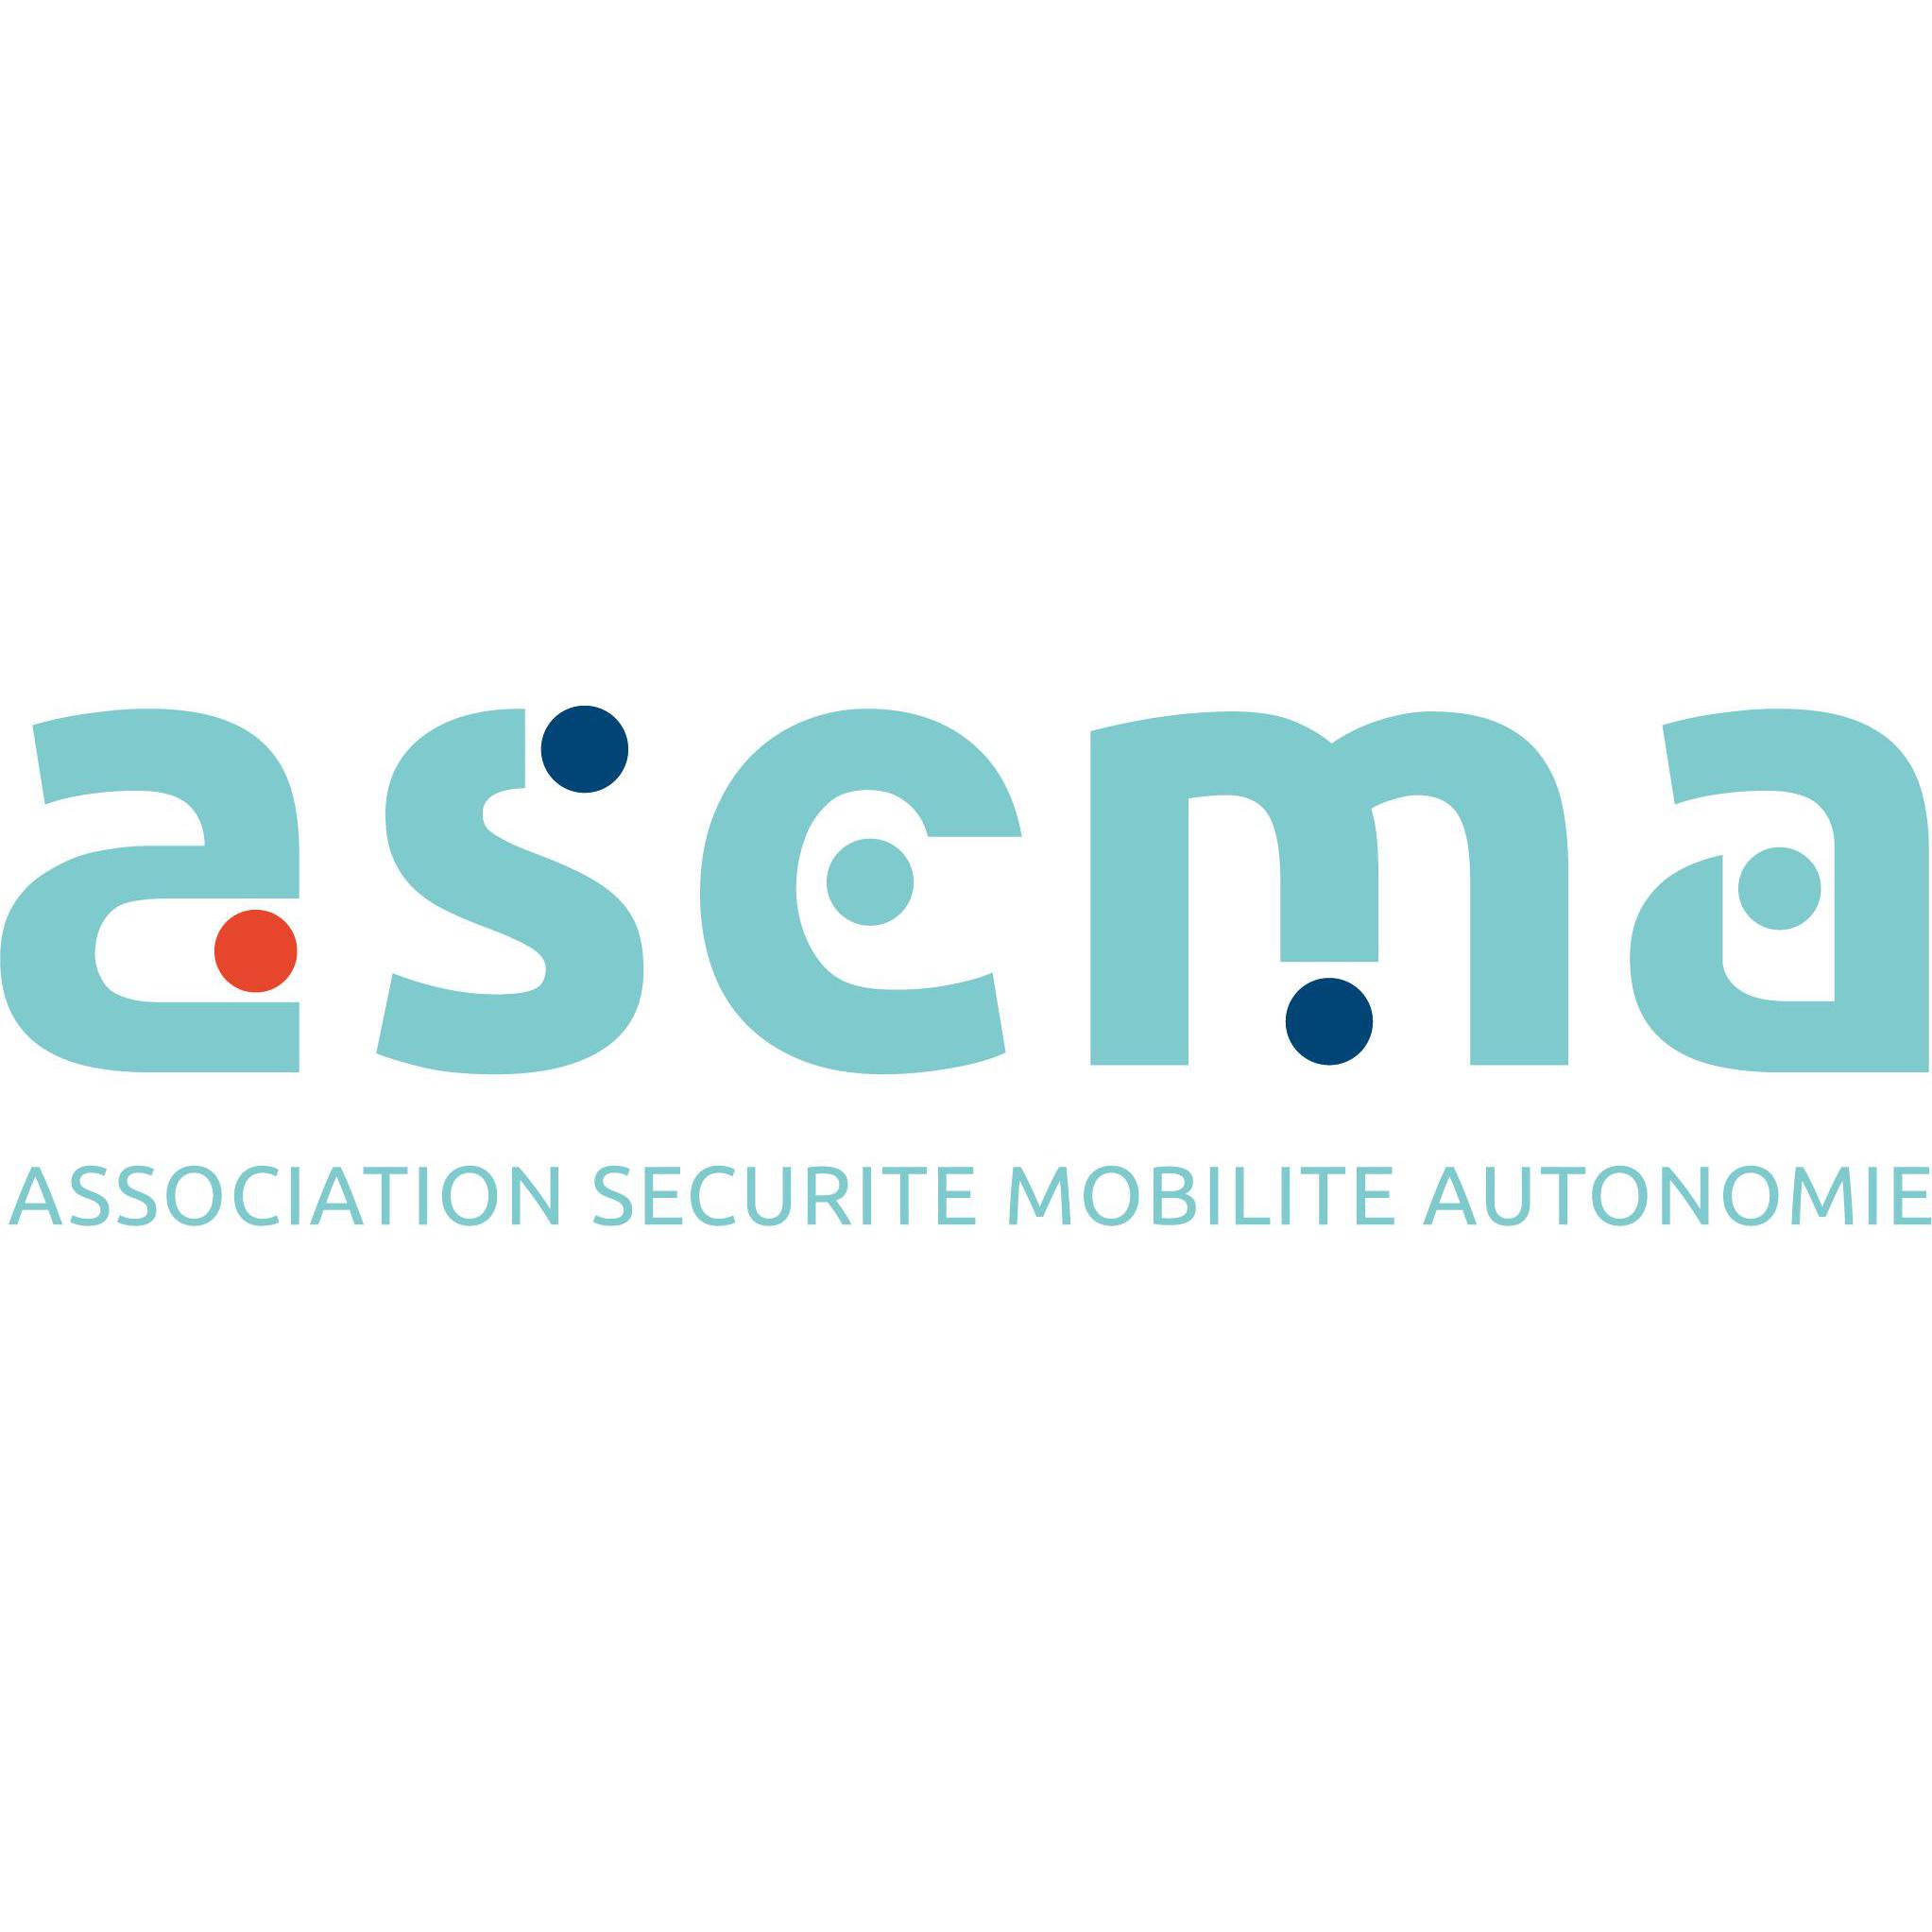 ASEMA Association Sécurité Mobilité Autonomie Logo